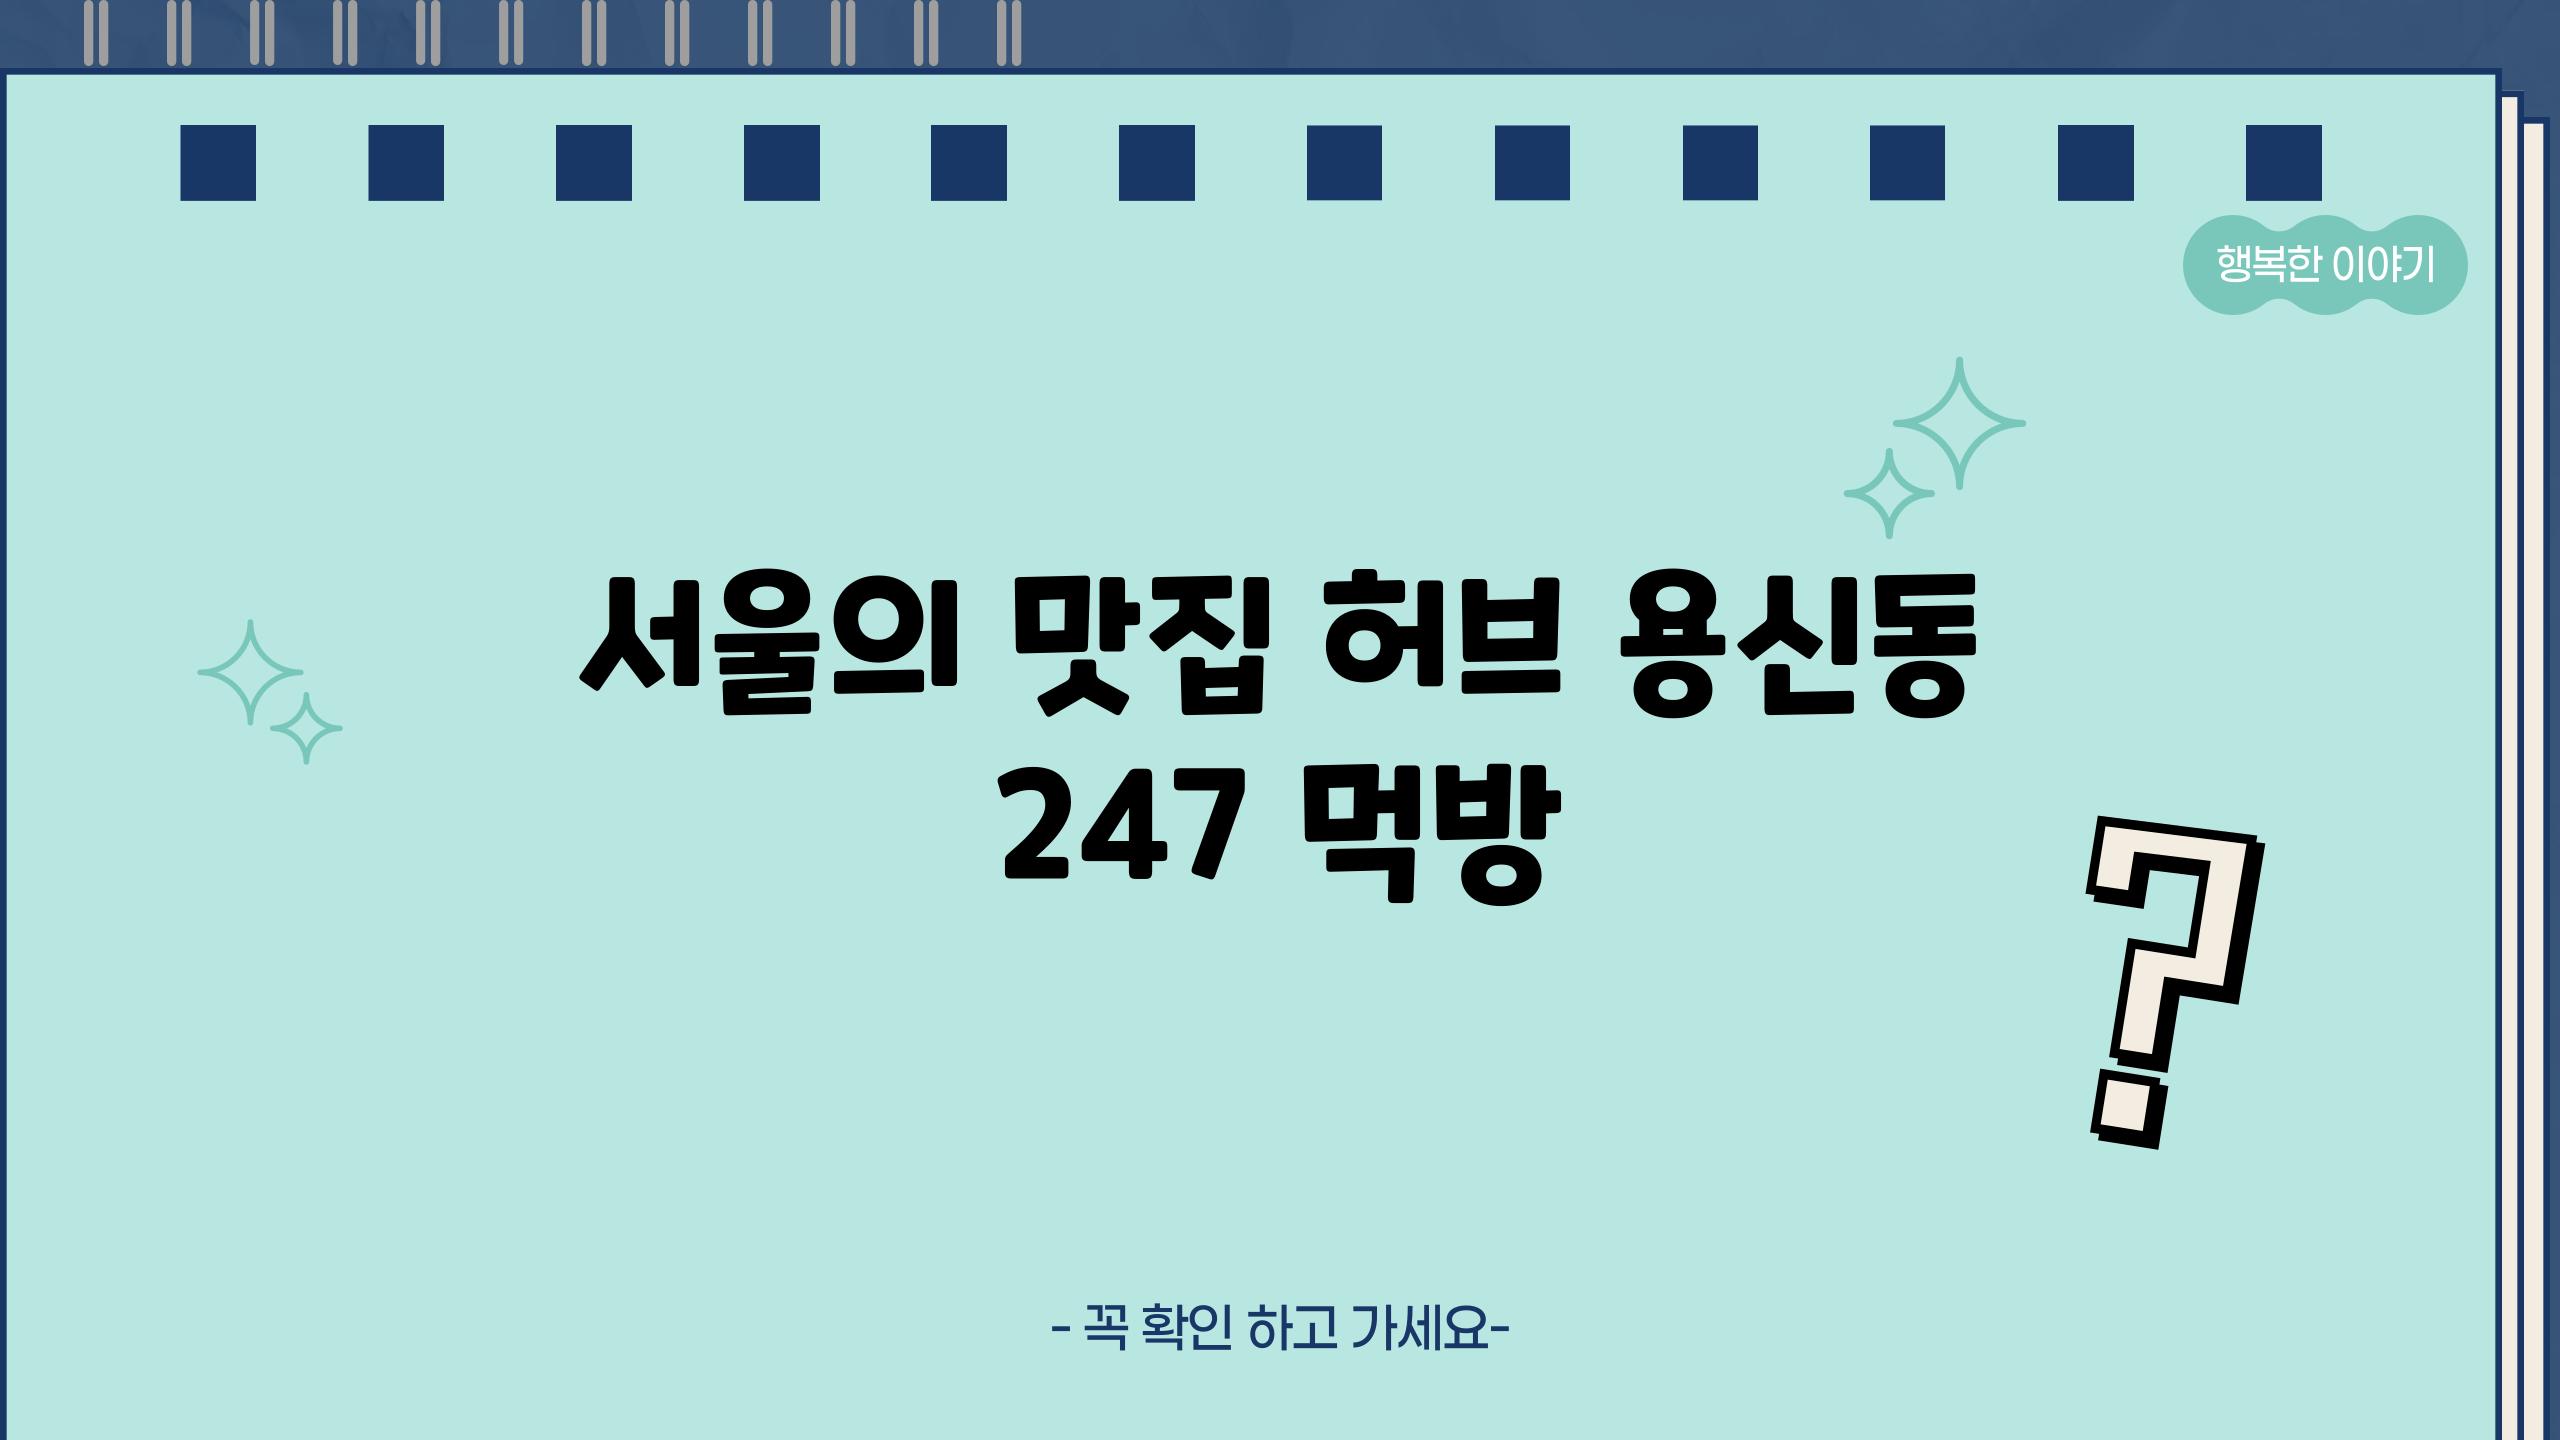 서울의 맛집 허브| 용신동 24/7 먹방